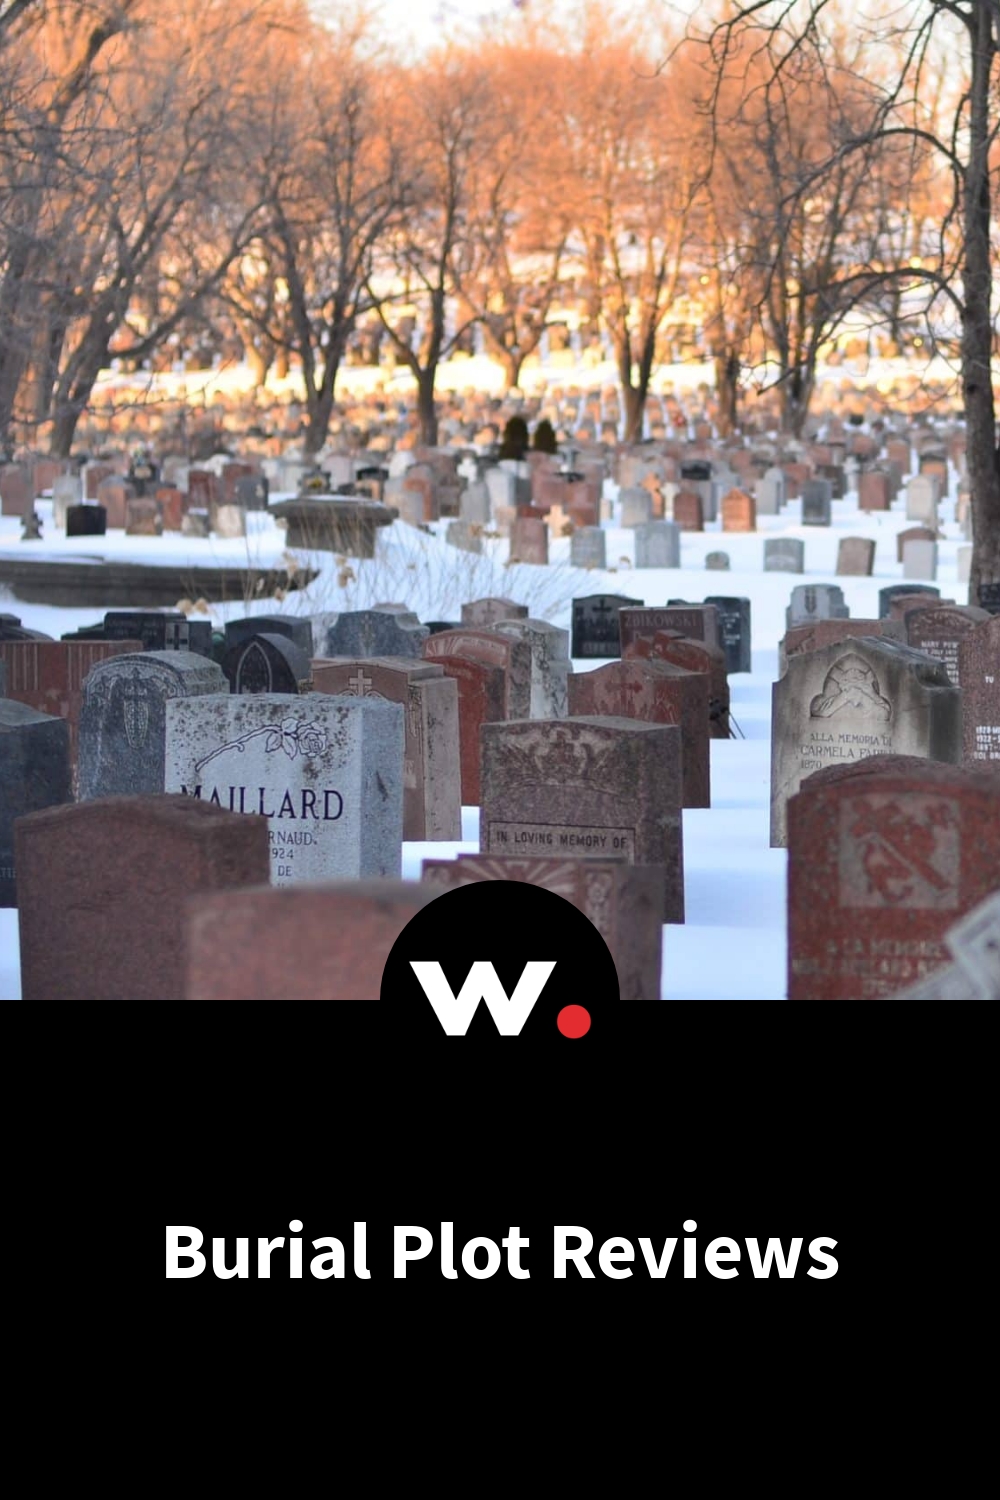 Burial Plot Reviews